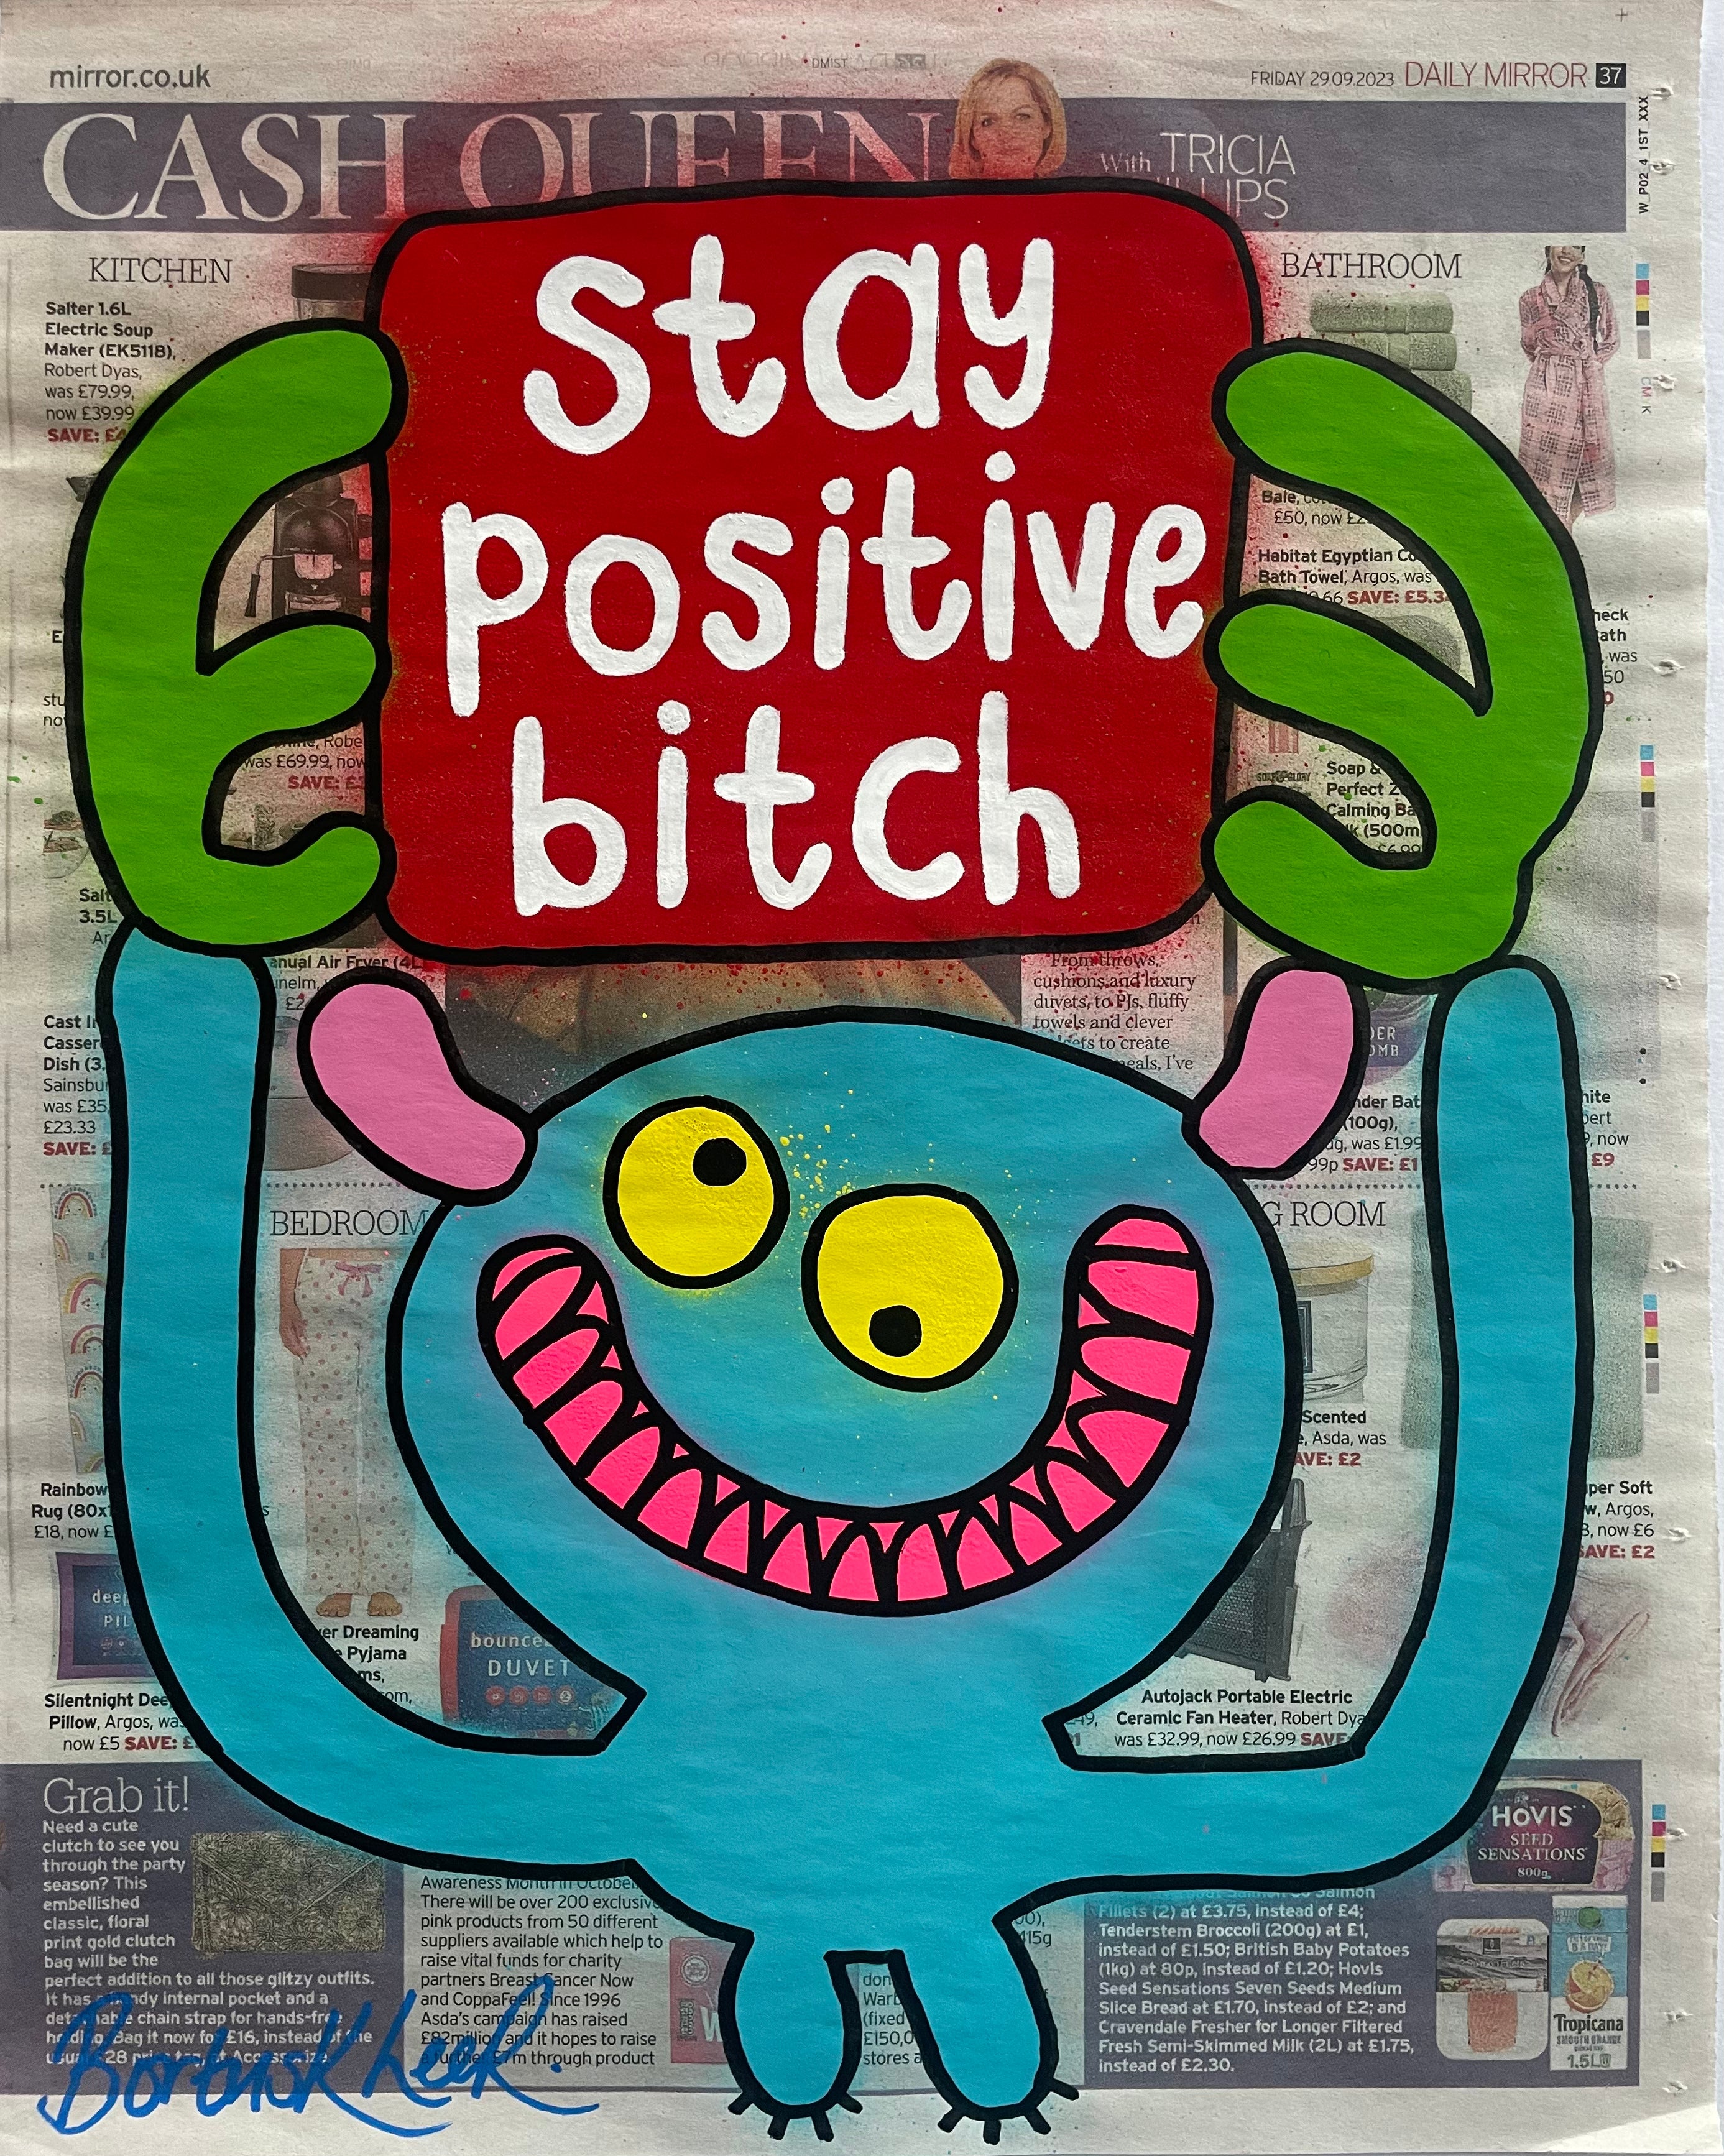 Stay positive bitch